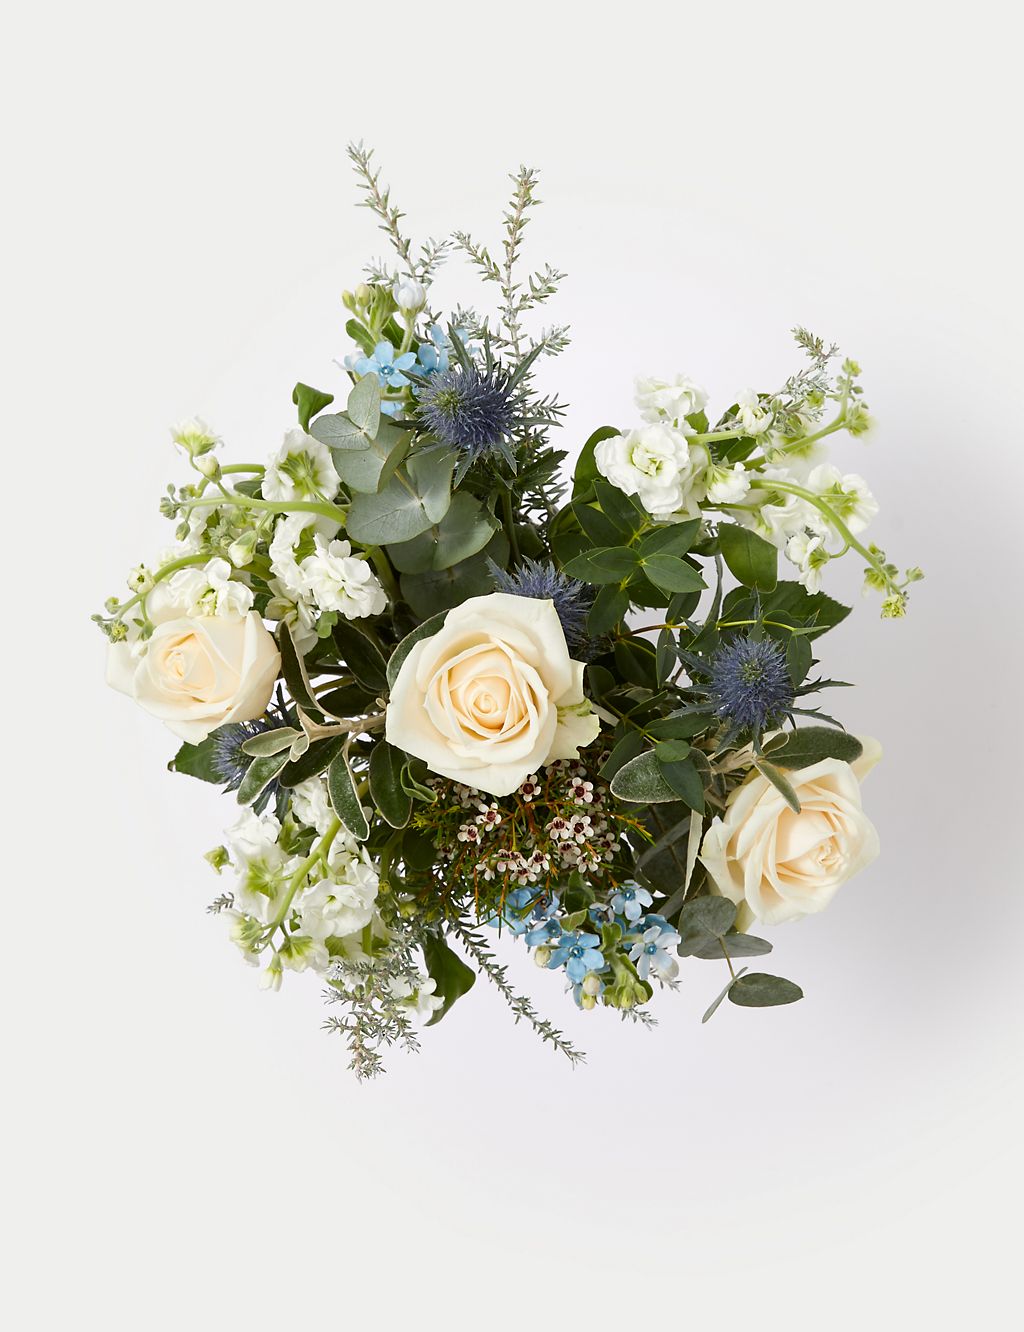 Cream Rose & Blue Eryngium Bouquet in Vase 1 of 5